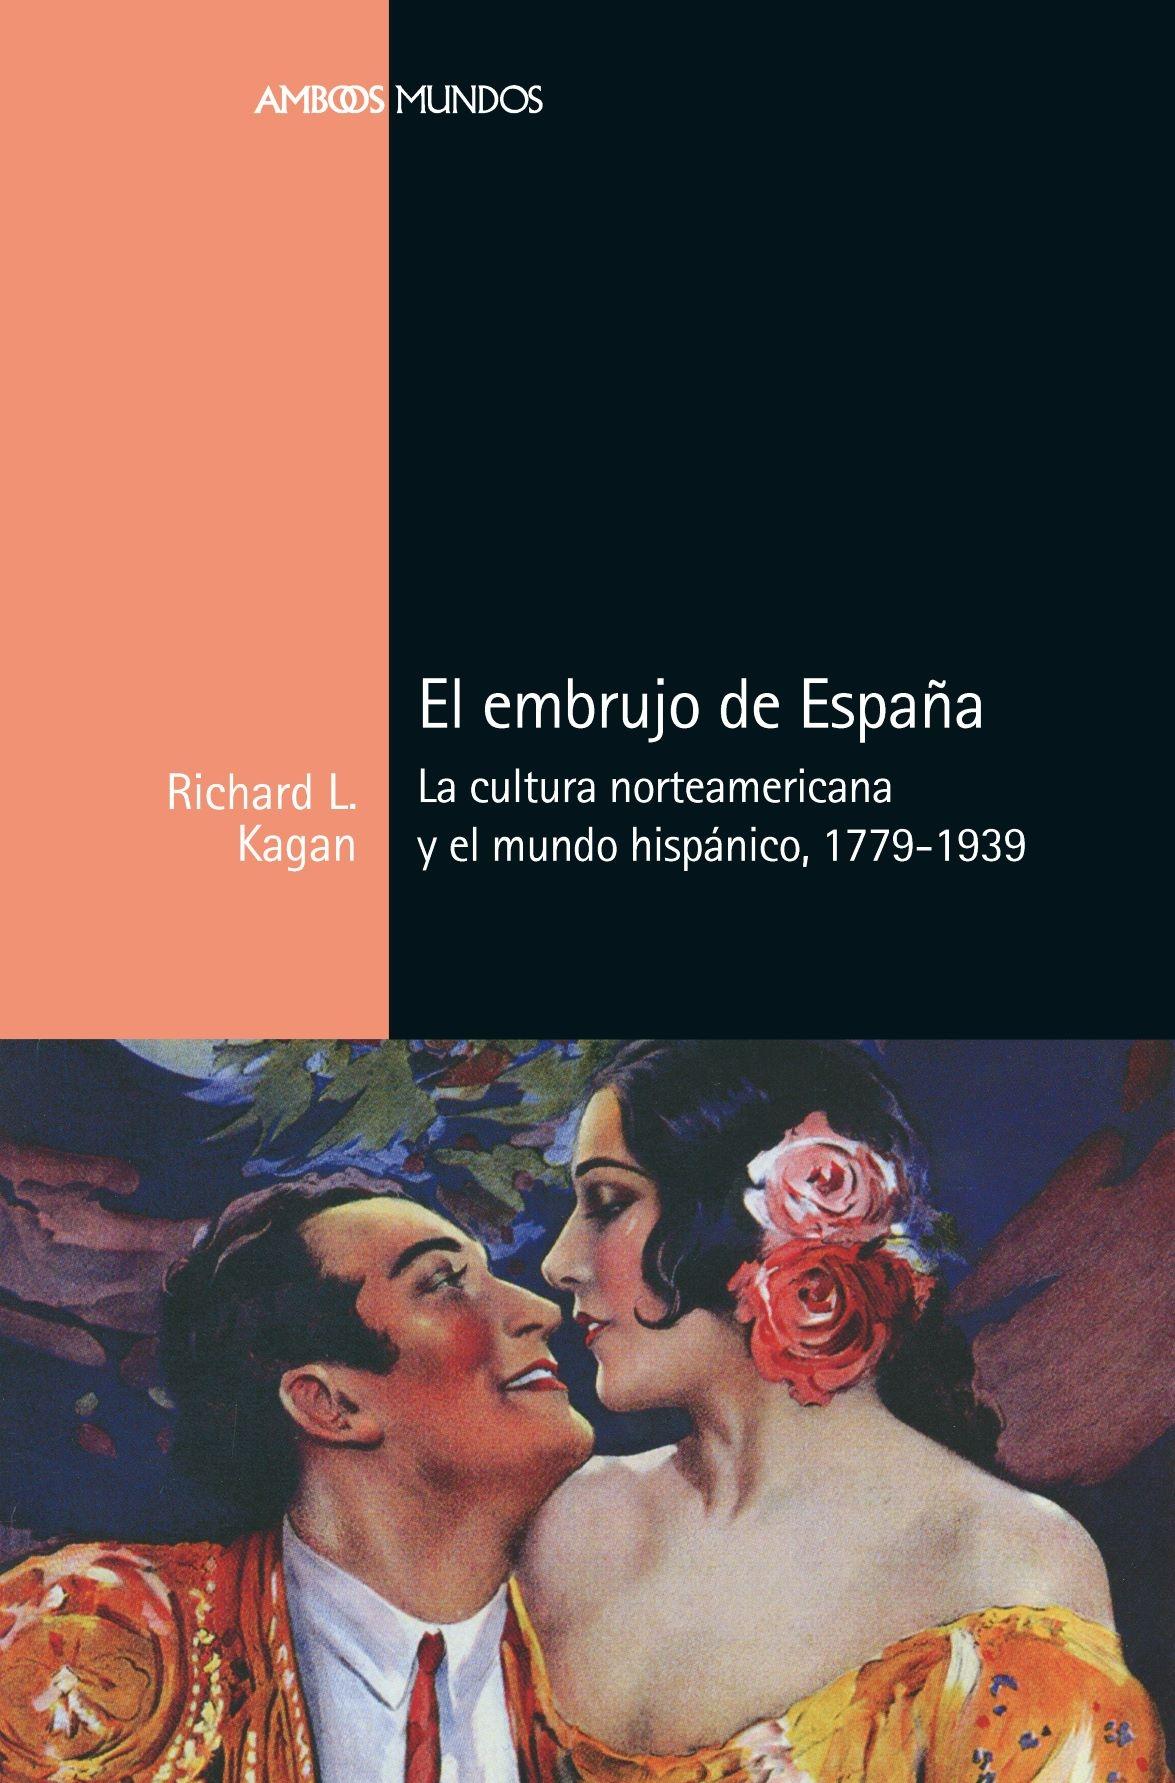 Embrujo de España, El "La cultura norteamericana y el mundo hispánico, 1779-1939"